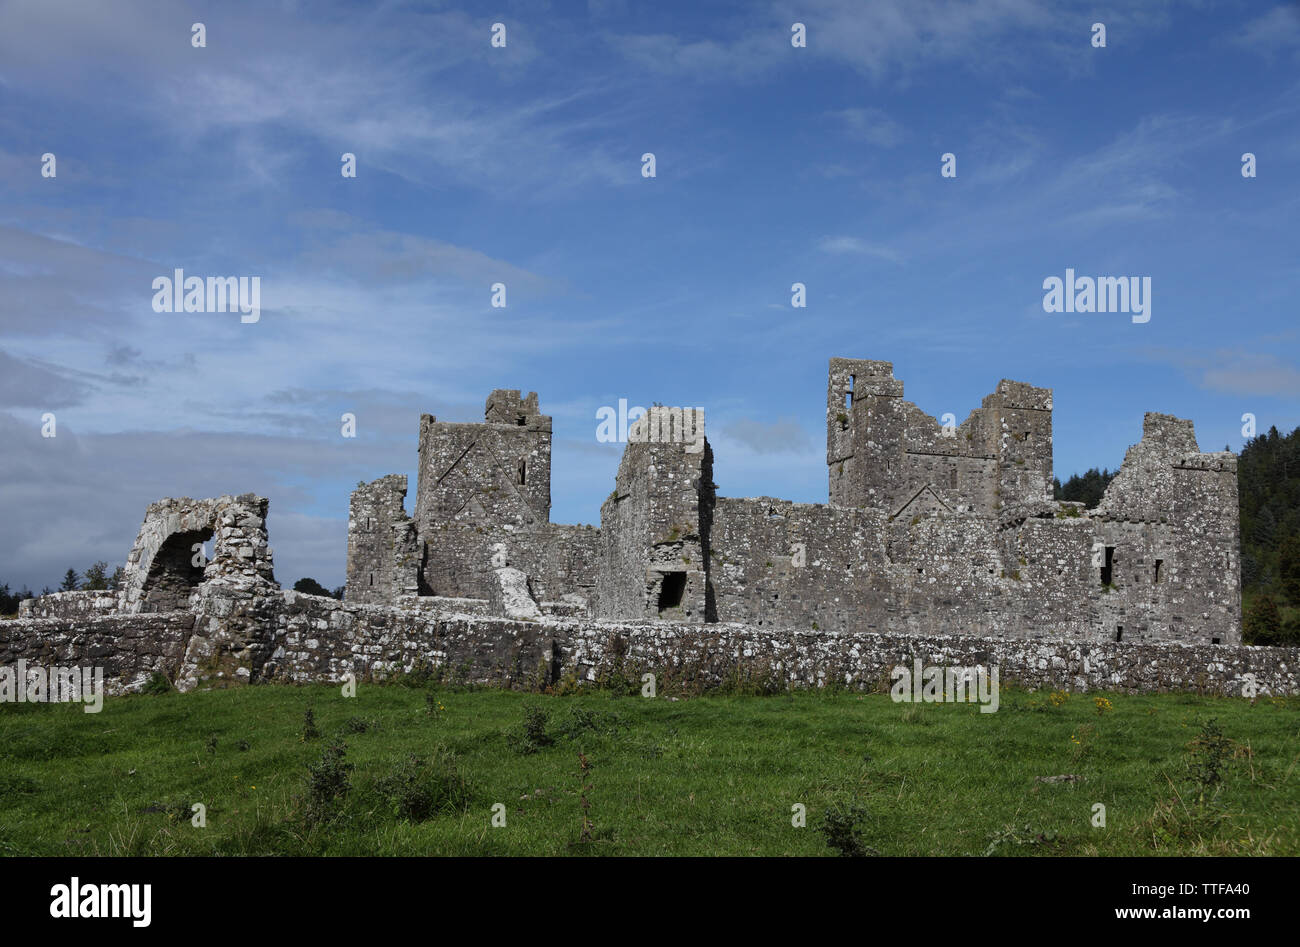 Ruines de l'abbaye bénédictine d'avancement médiévale, connu comme le lieu des sept merveilles, Fore, comté de Westmeath, Irlande Banque D'Images